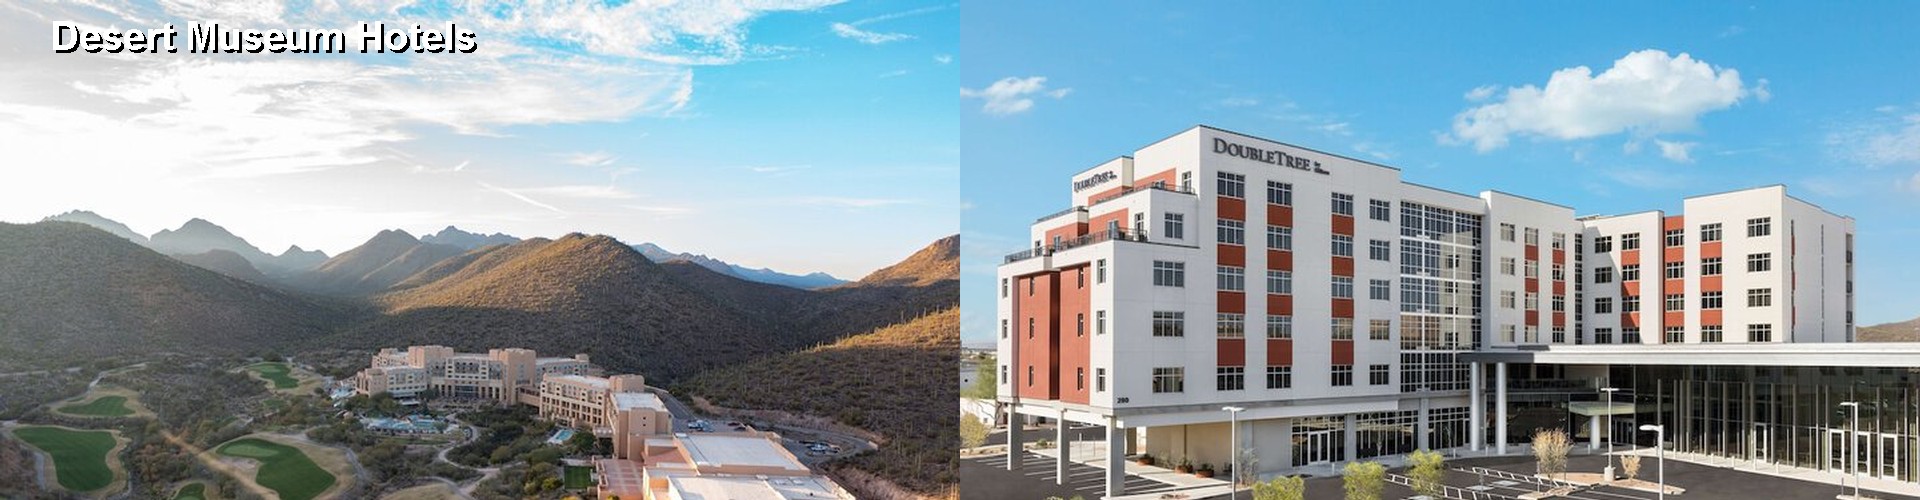 4 Best Hotels near Desert Museum